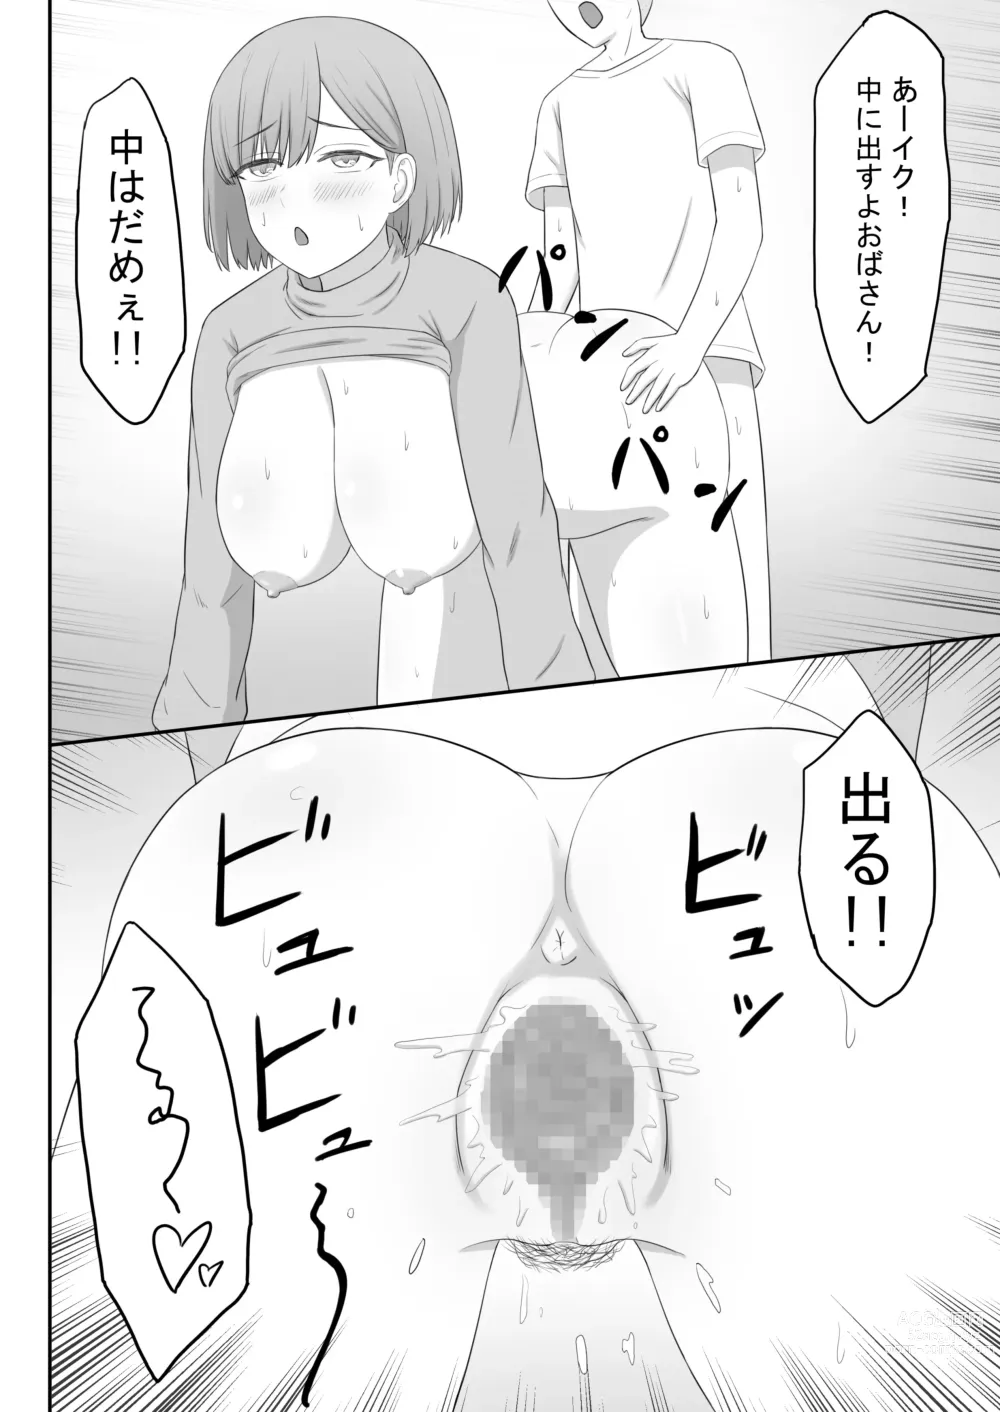 Page 24 of doujinshi Okaa-san wa Tomodachi no SeFri